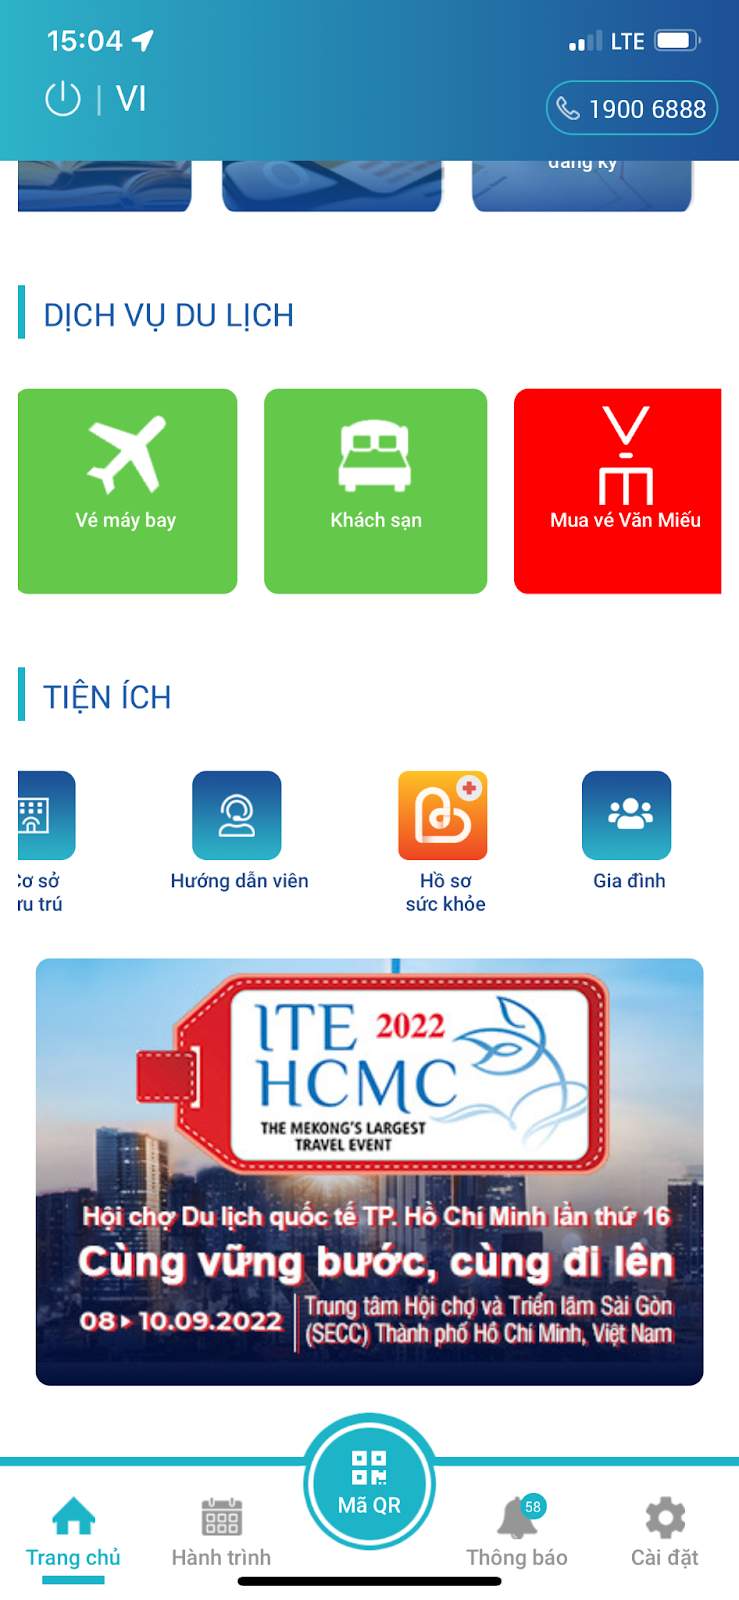 Vietnam Travel App